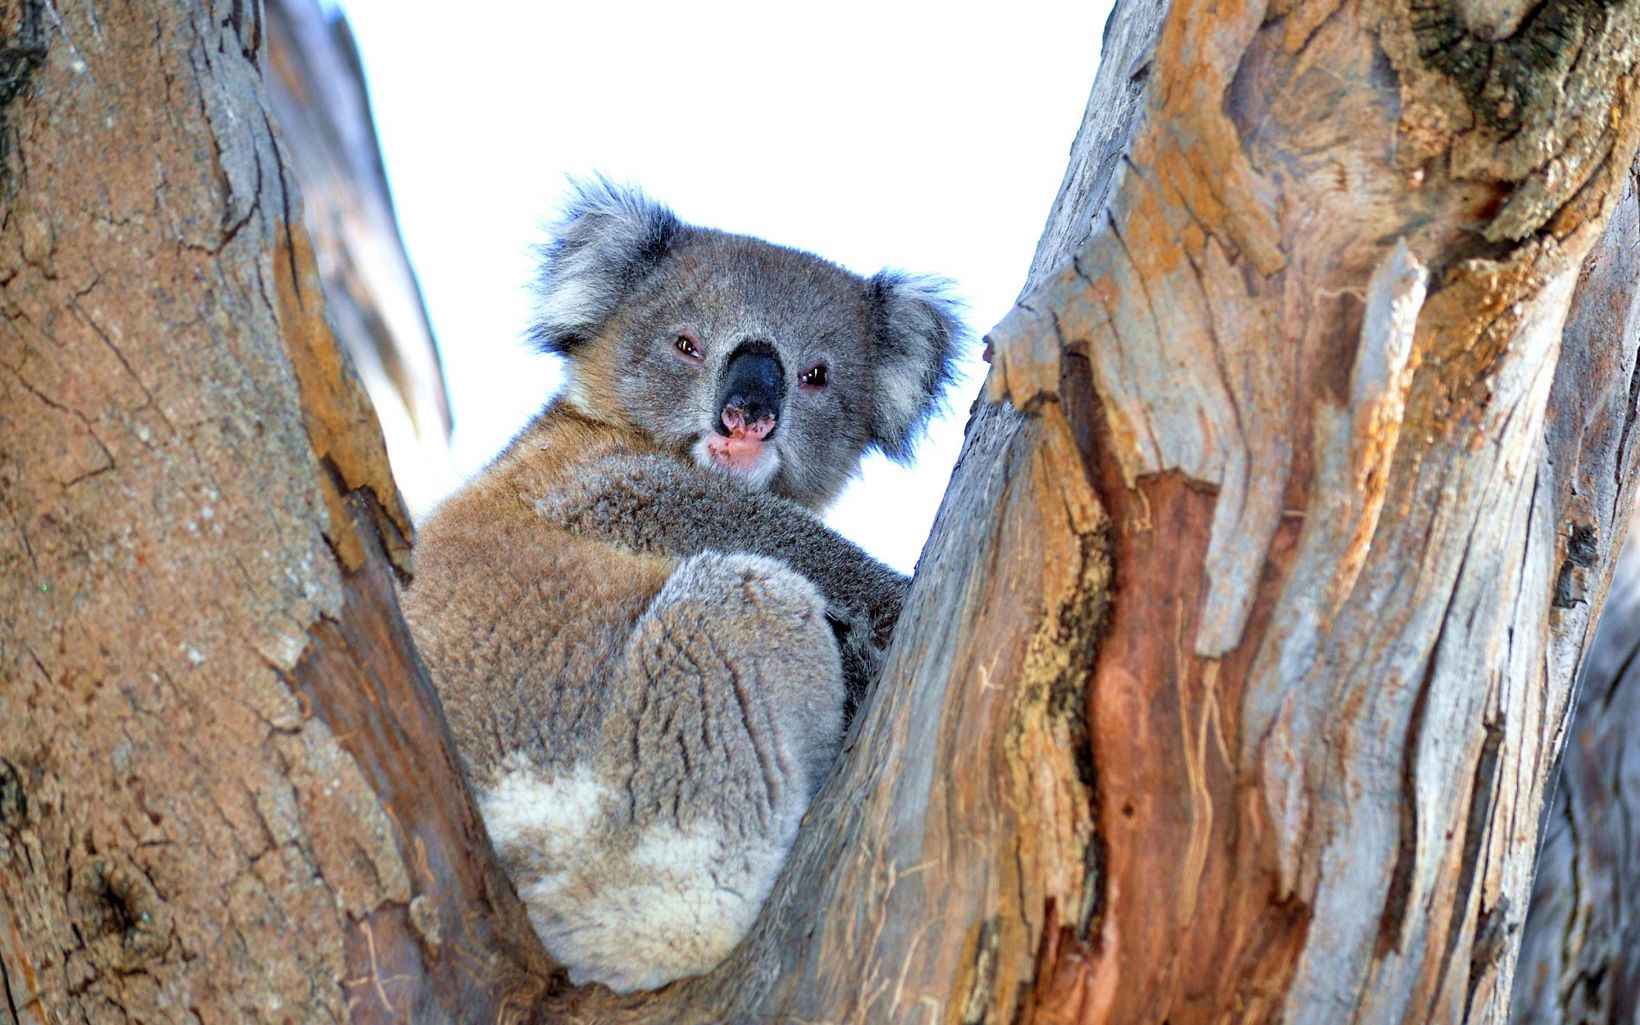 Koala in a gum tree in southern NSW © Sinclair Oldfield